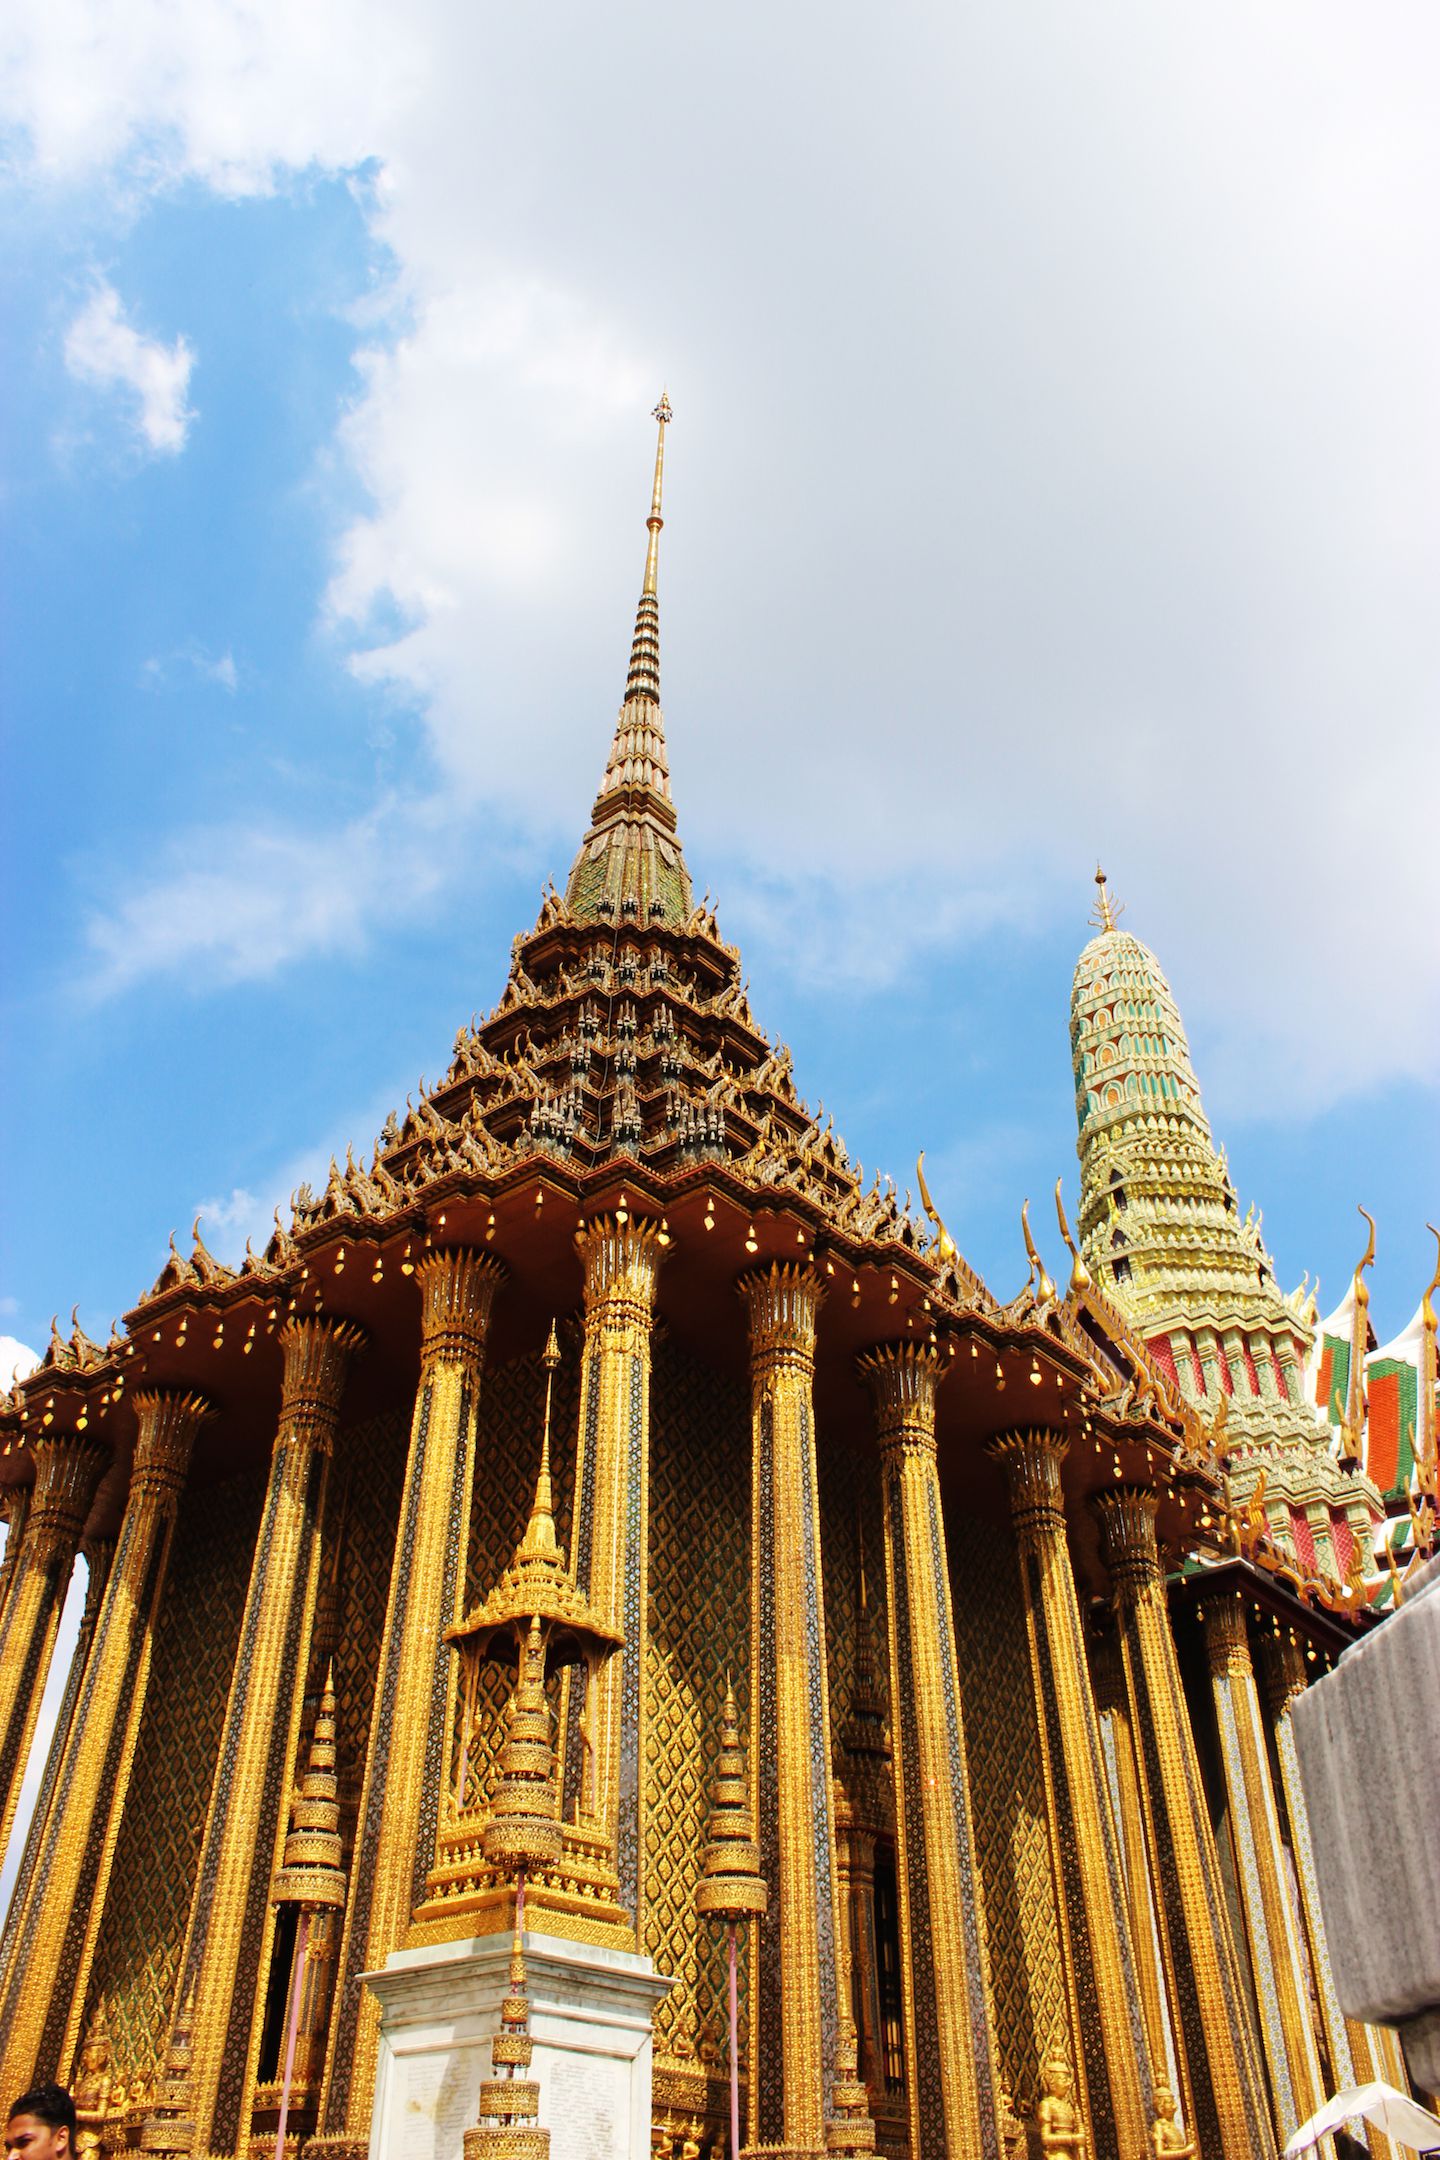 VIew of Phra Mondop at Wat Phra Kaew in Bangkok